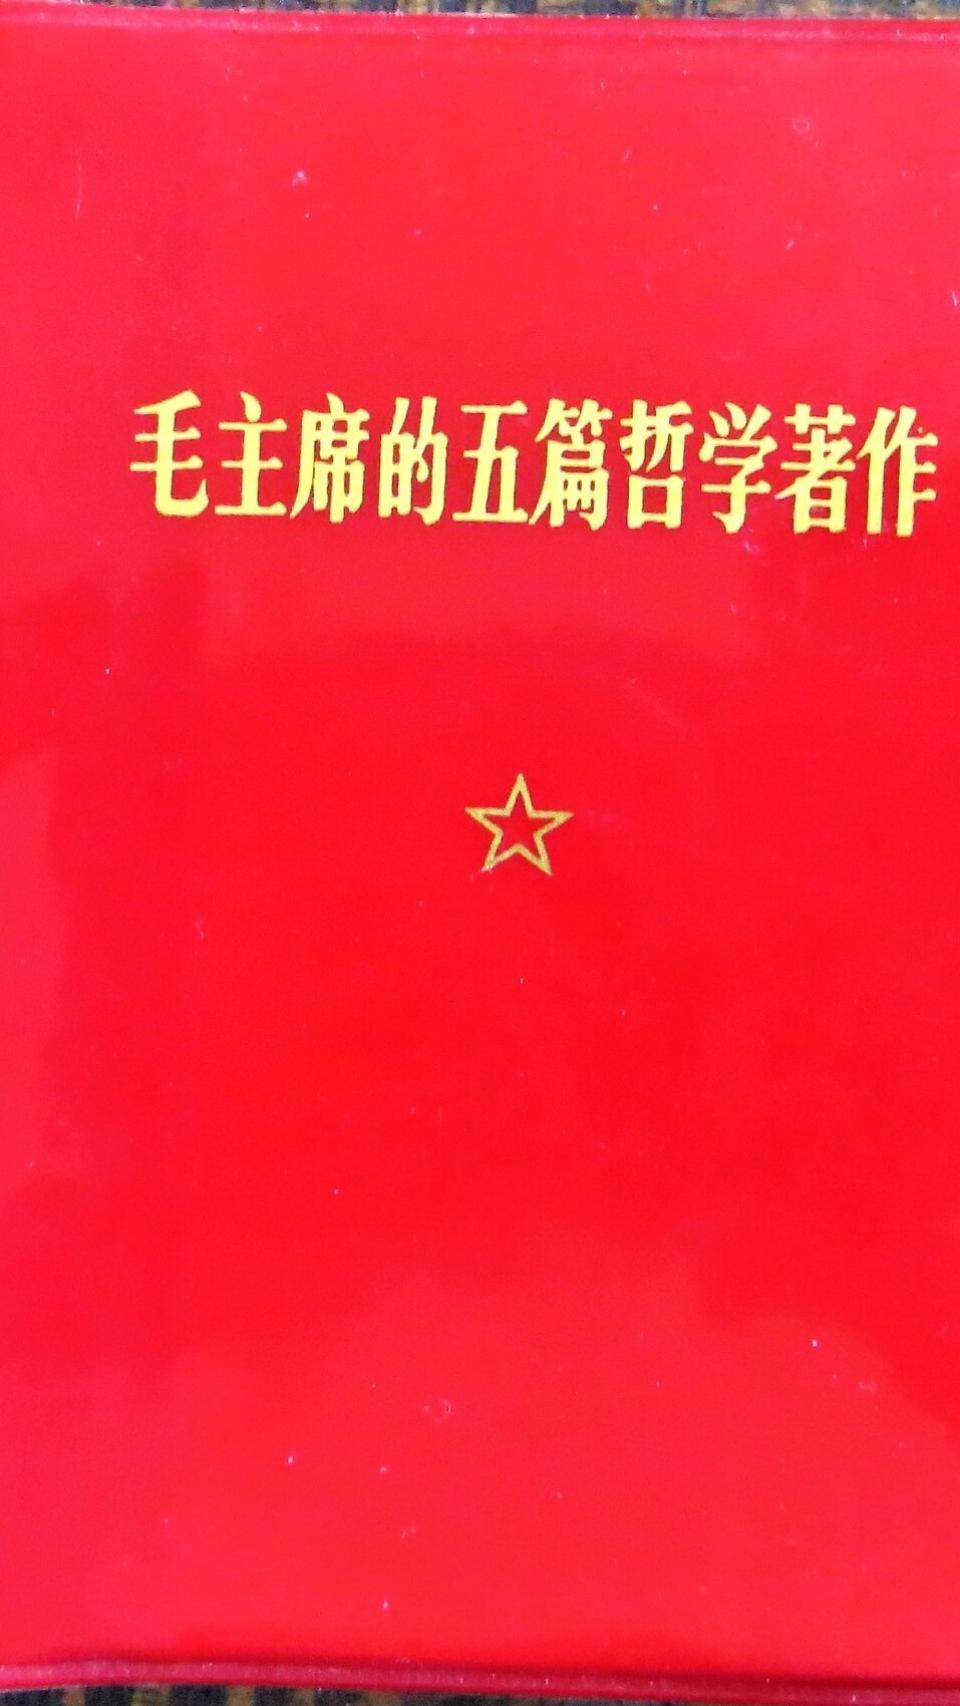 El libro rojo de Mao.